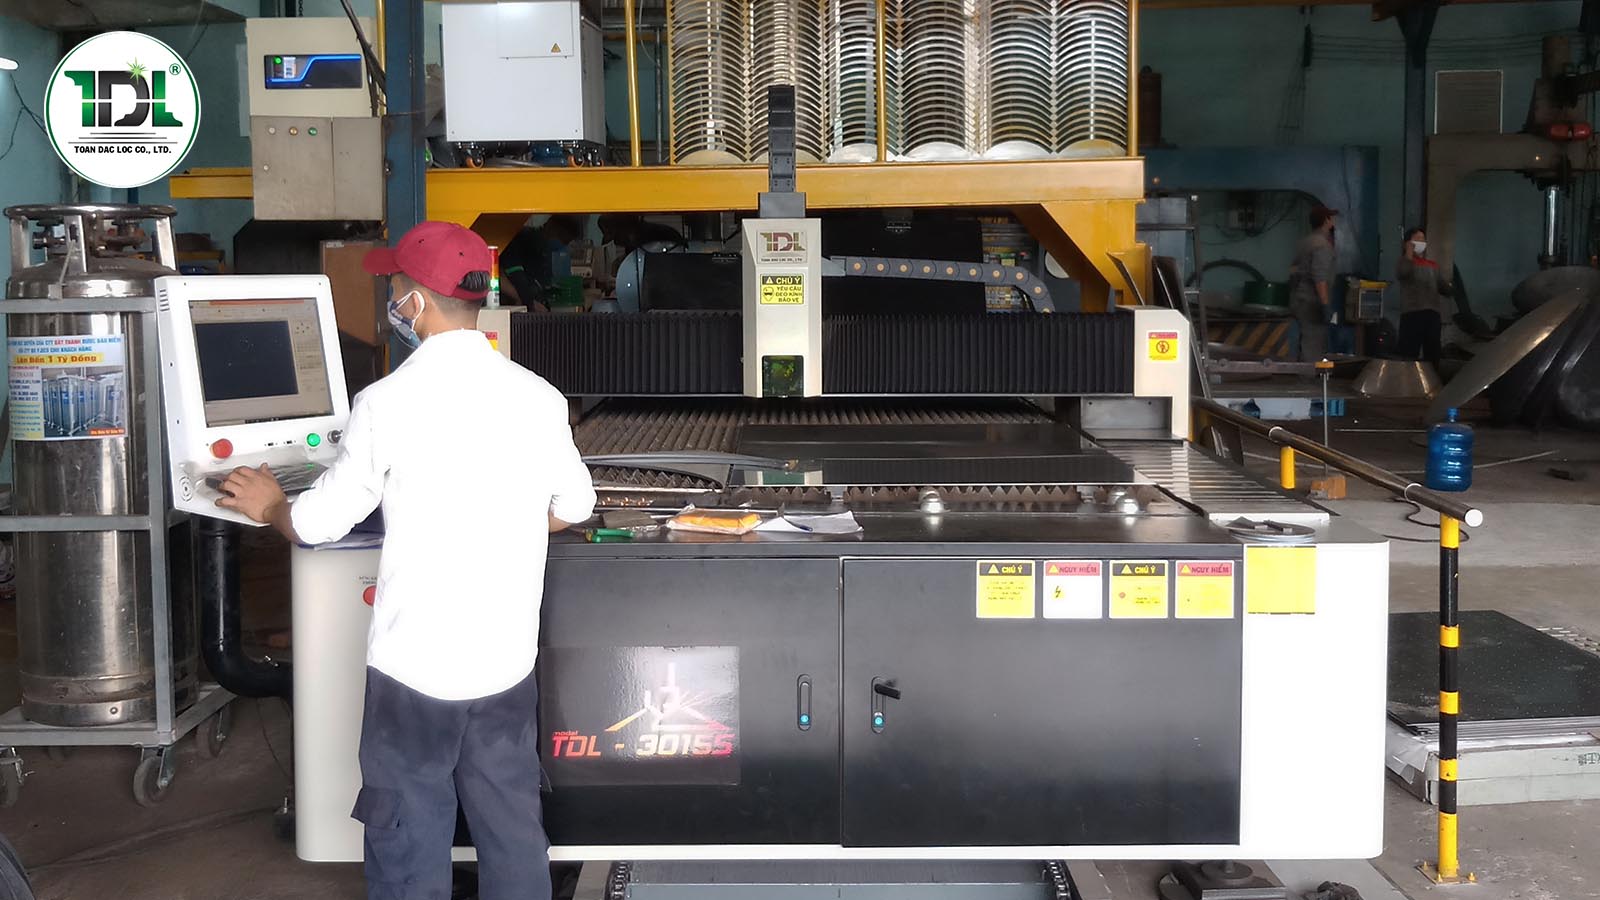 Bàn giao máy cắt Laser TDL-6020E nguồn 3000W tại Công ty Huỳnh Nghiệp